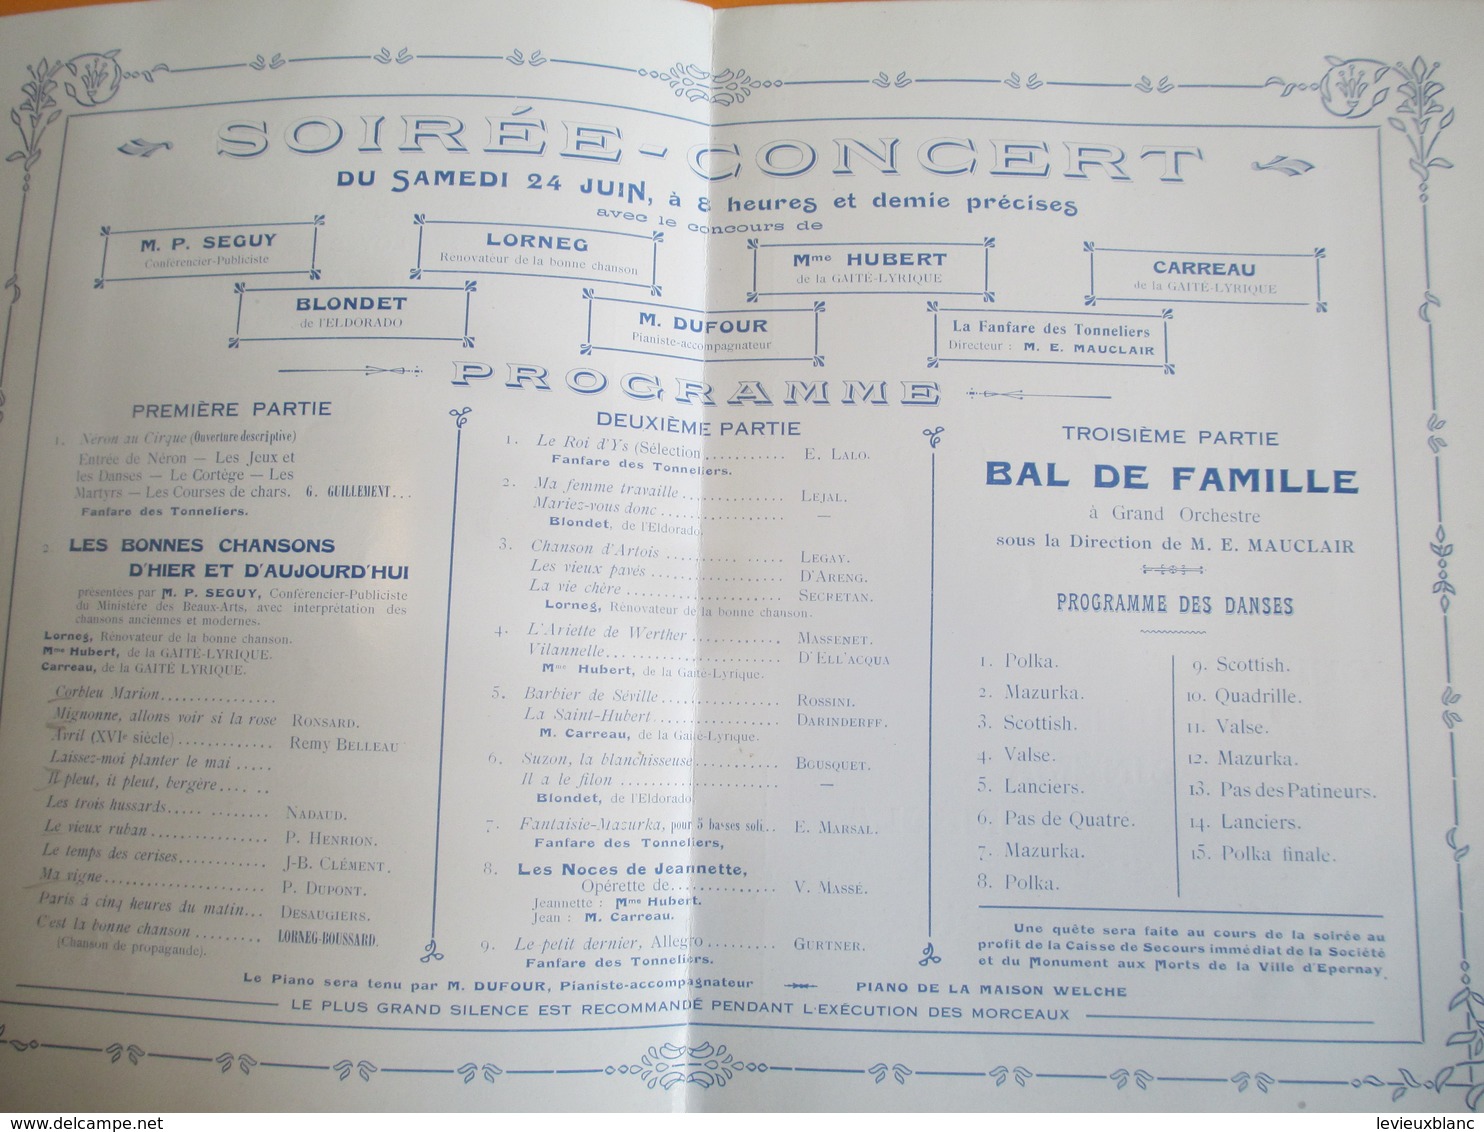 Programme/ Fête De Saint-Jean/ Corporatio Des Ouvriers Cavistes- Tonneliers_Bouchonniers/EPERNAY/ 1922    PROG164 - Godsdienst & Esoterisme